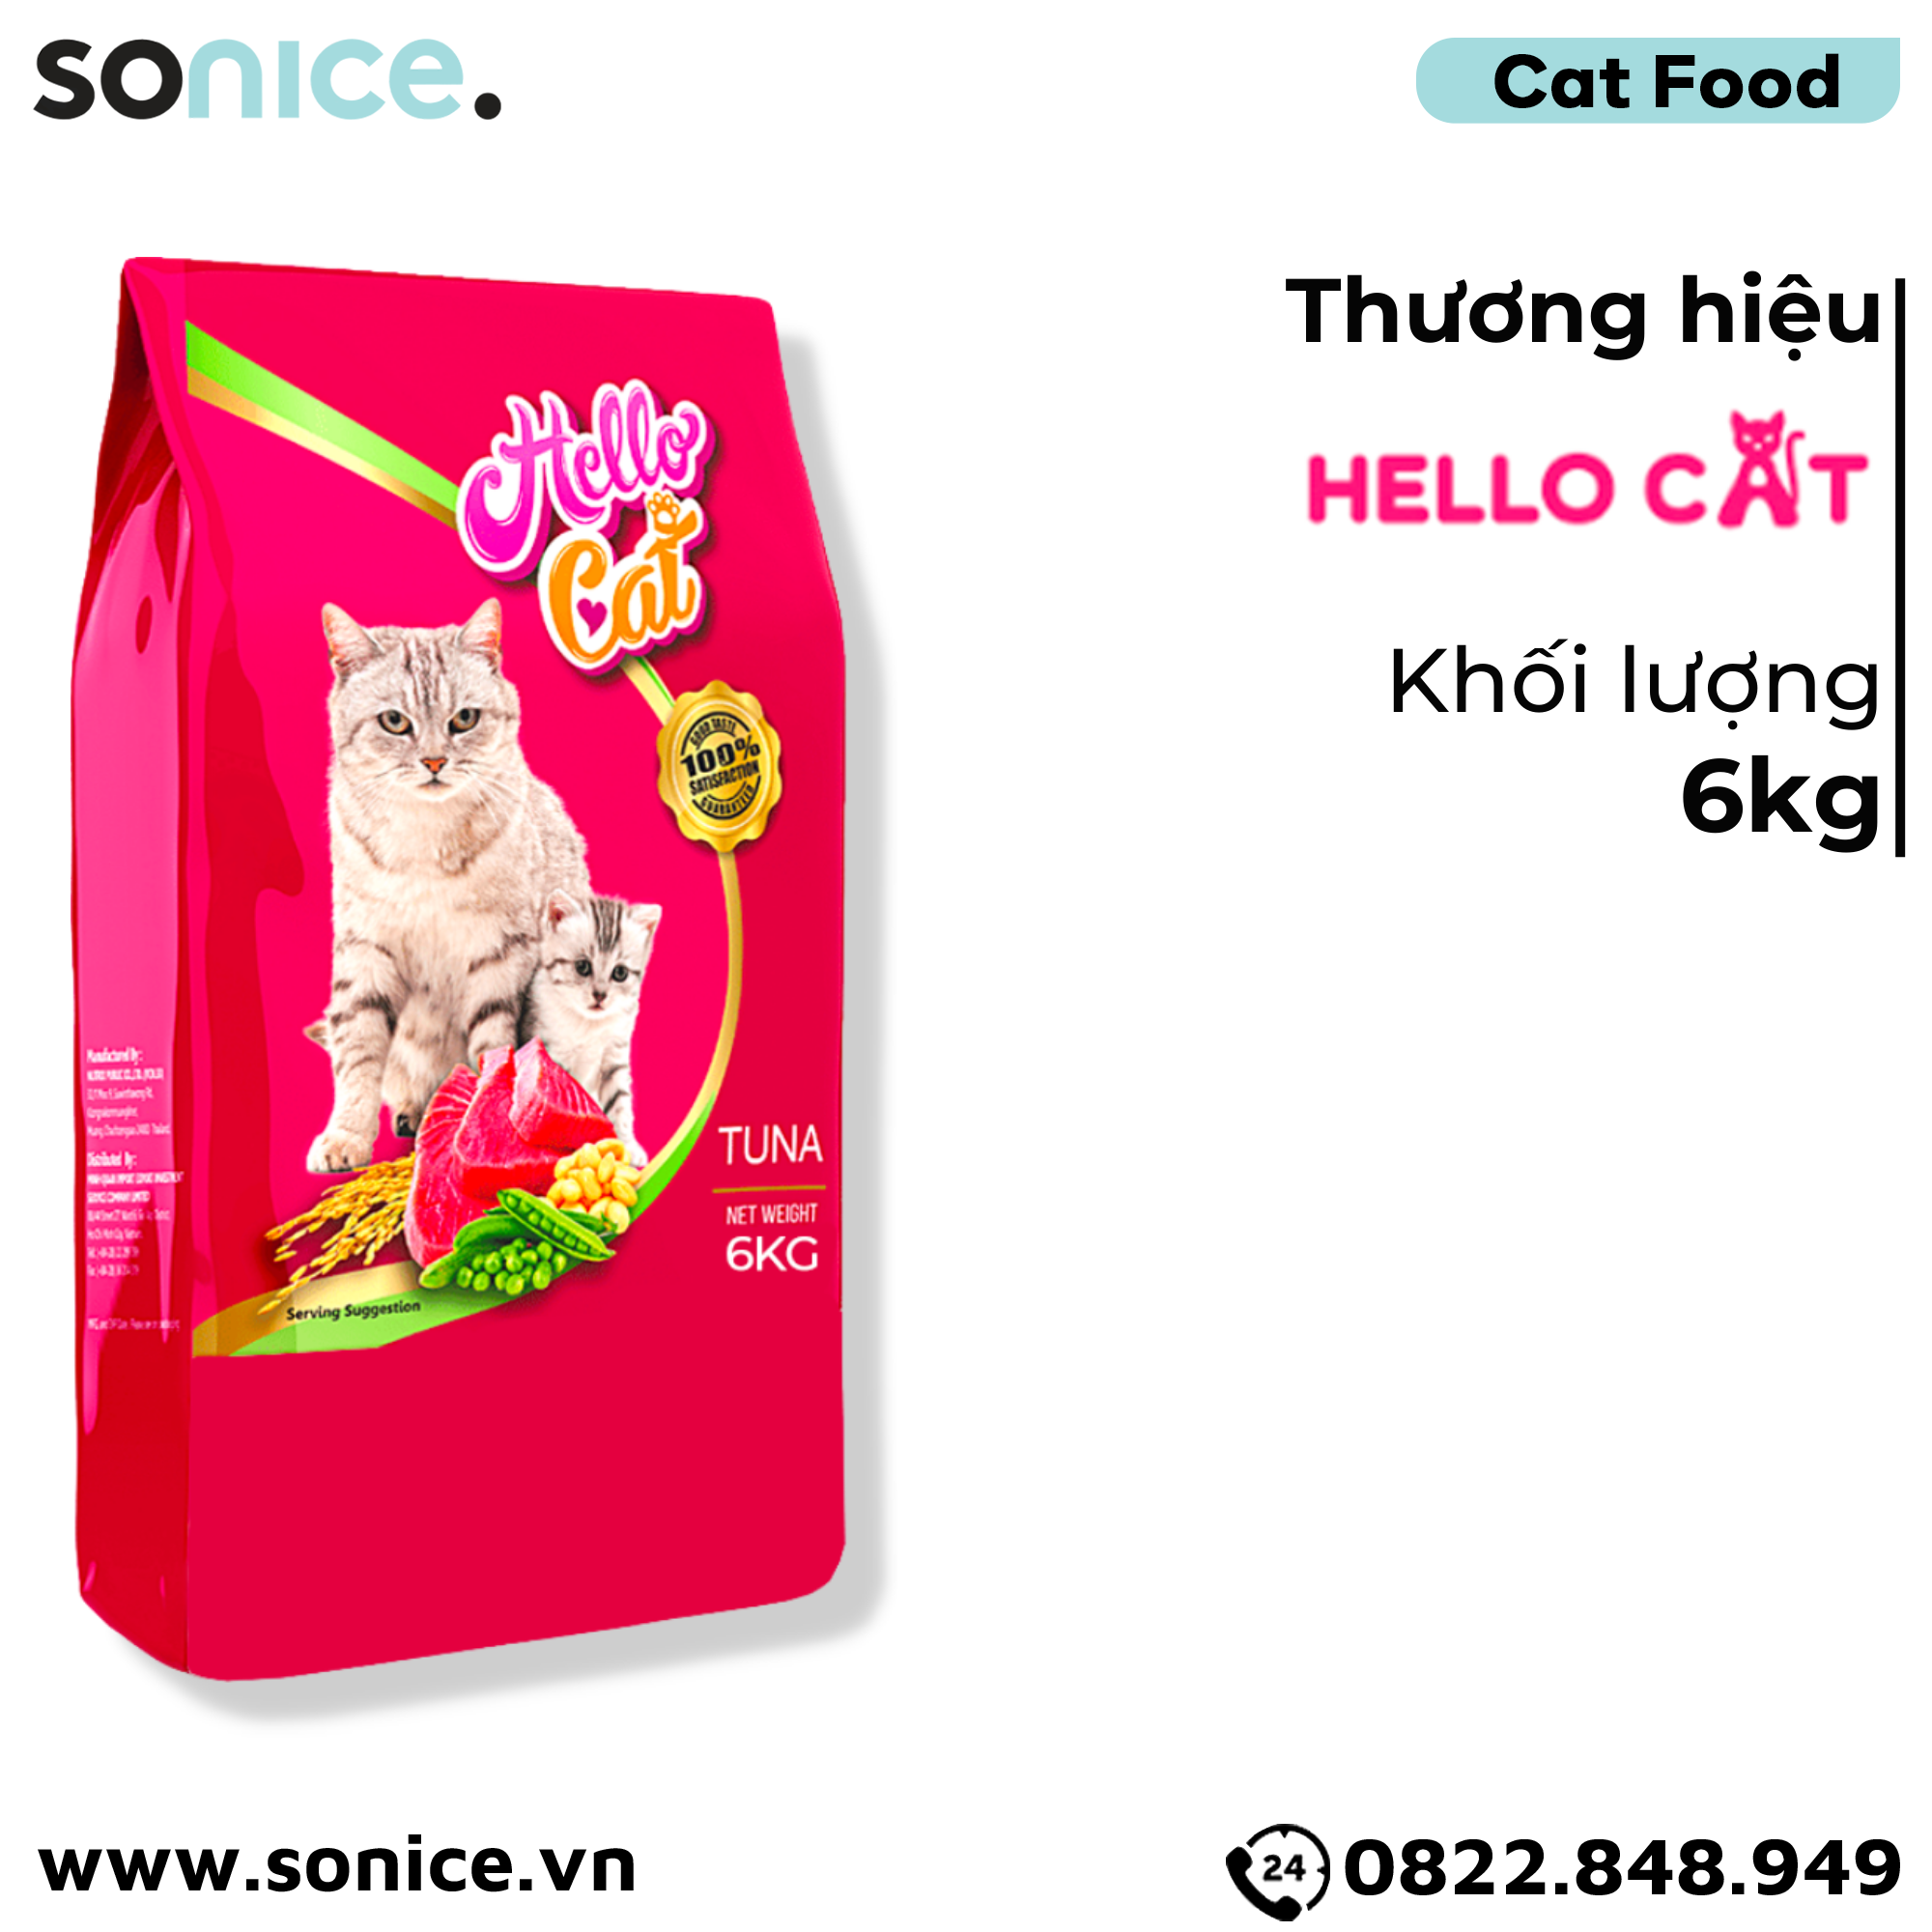  Thức ăn mèo HelloCat Tuna Flavor 6kg - Vị cá ngừ SONICE. 